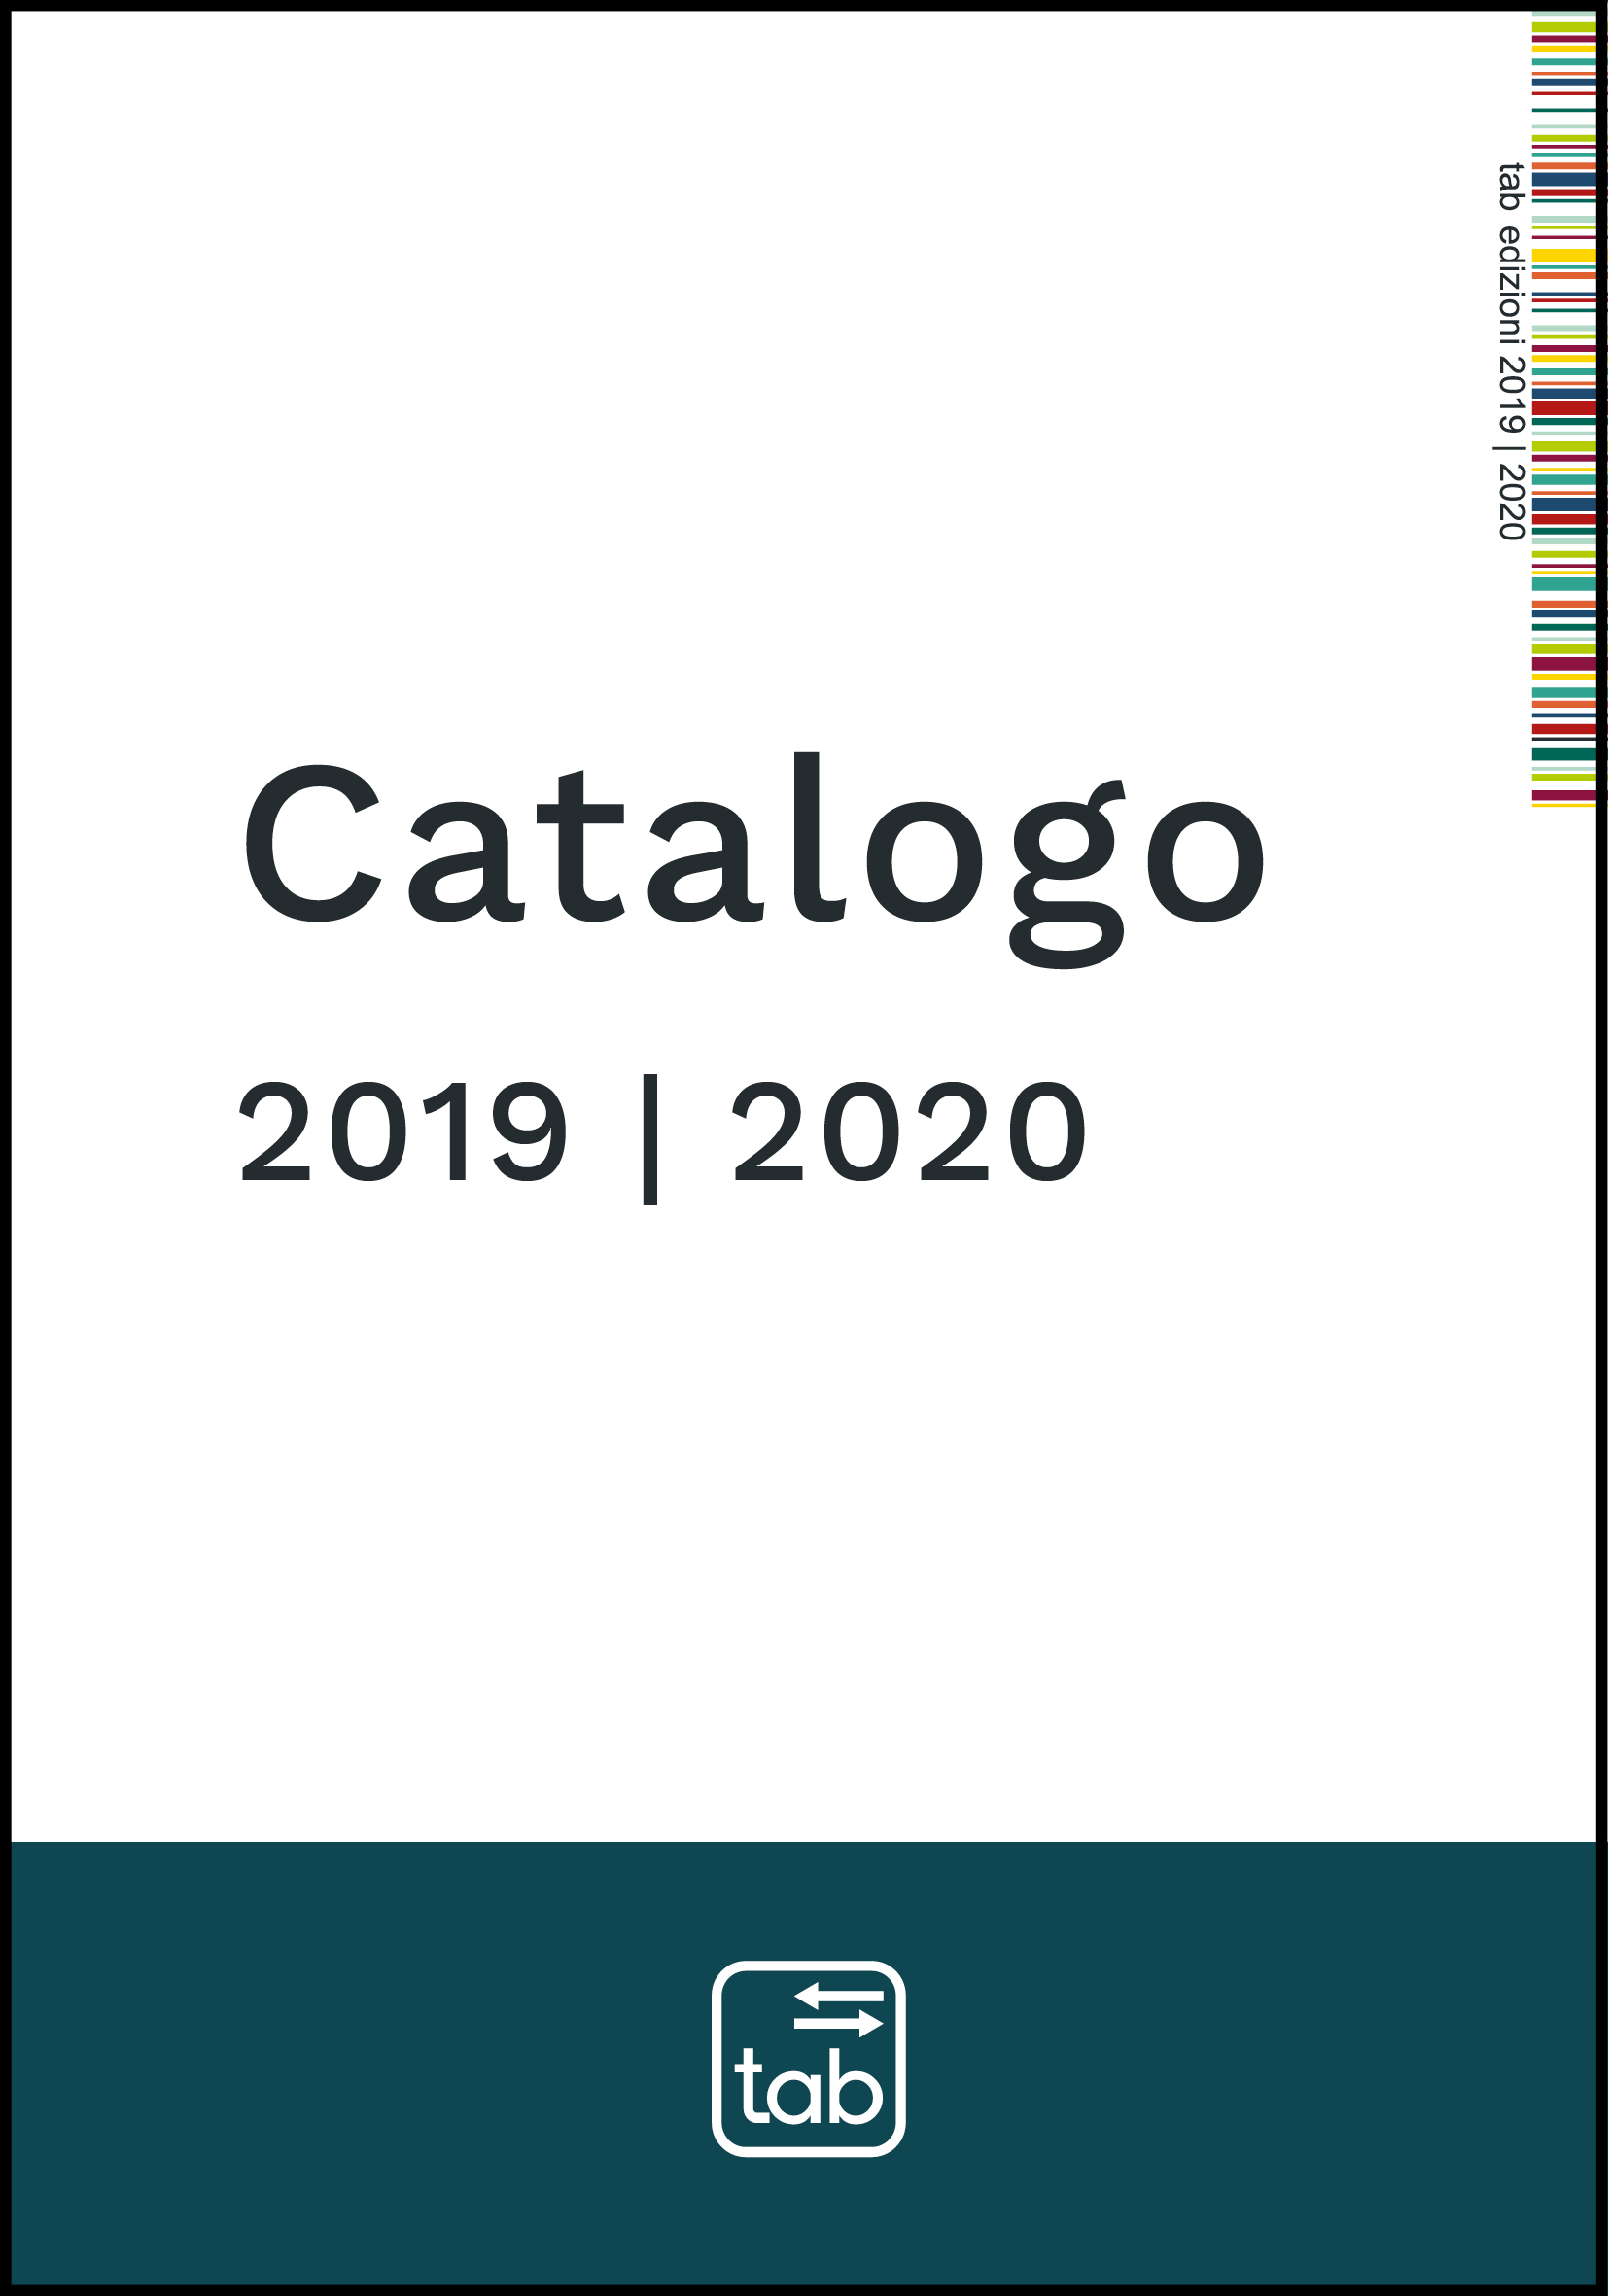 Catalogo 2019-2020